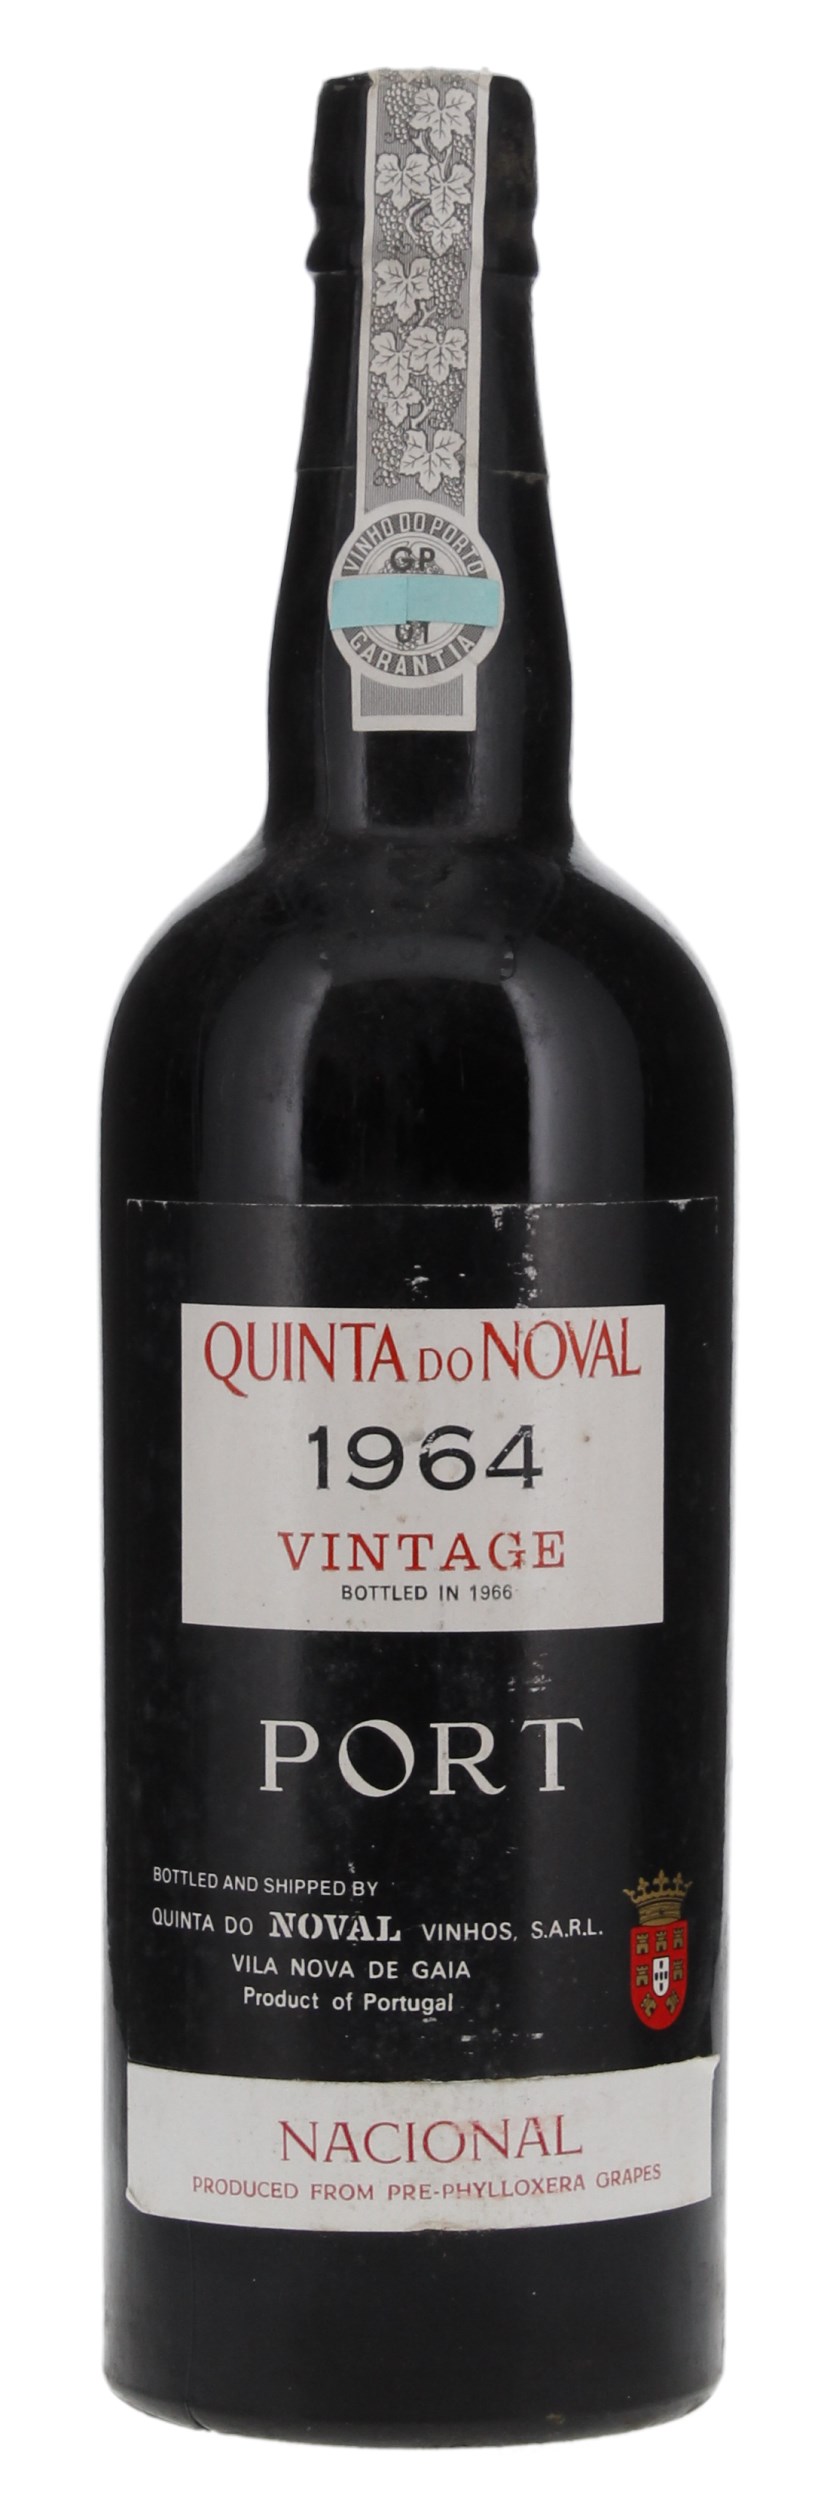 1964 Quinta do Noval Nacional, 750ml